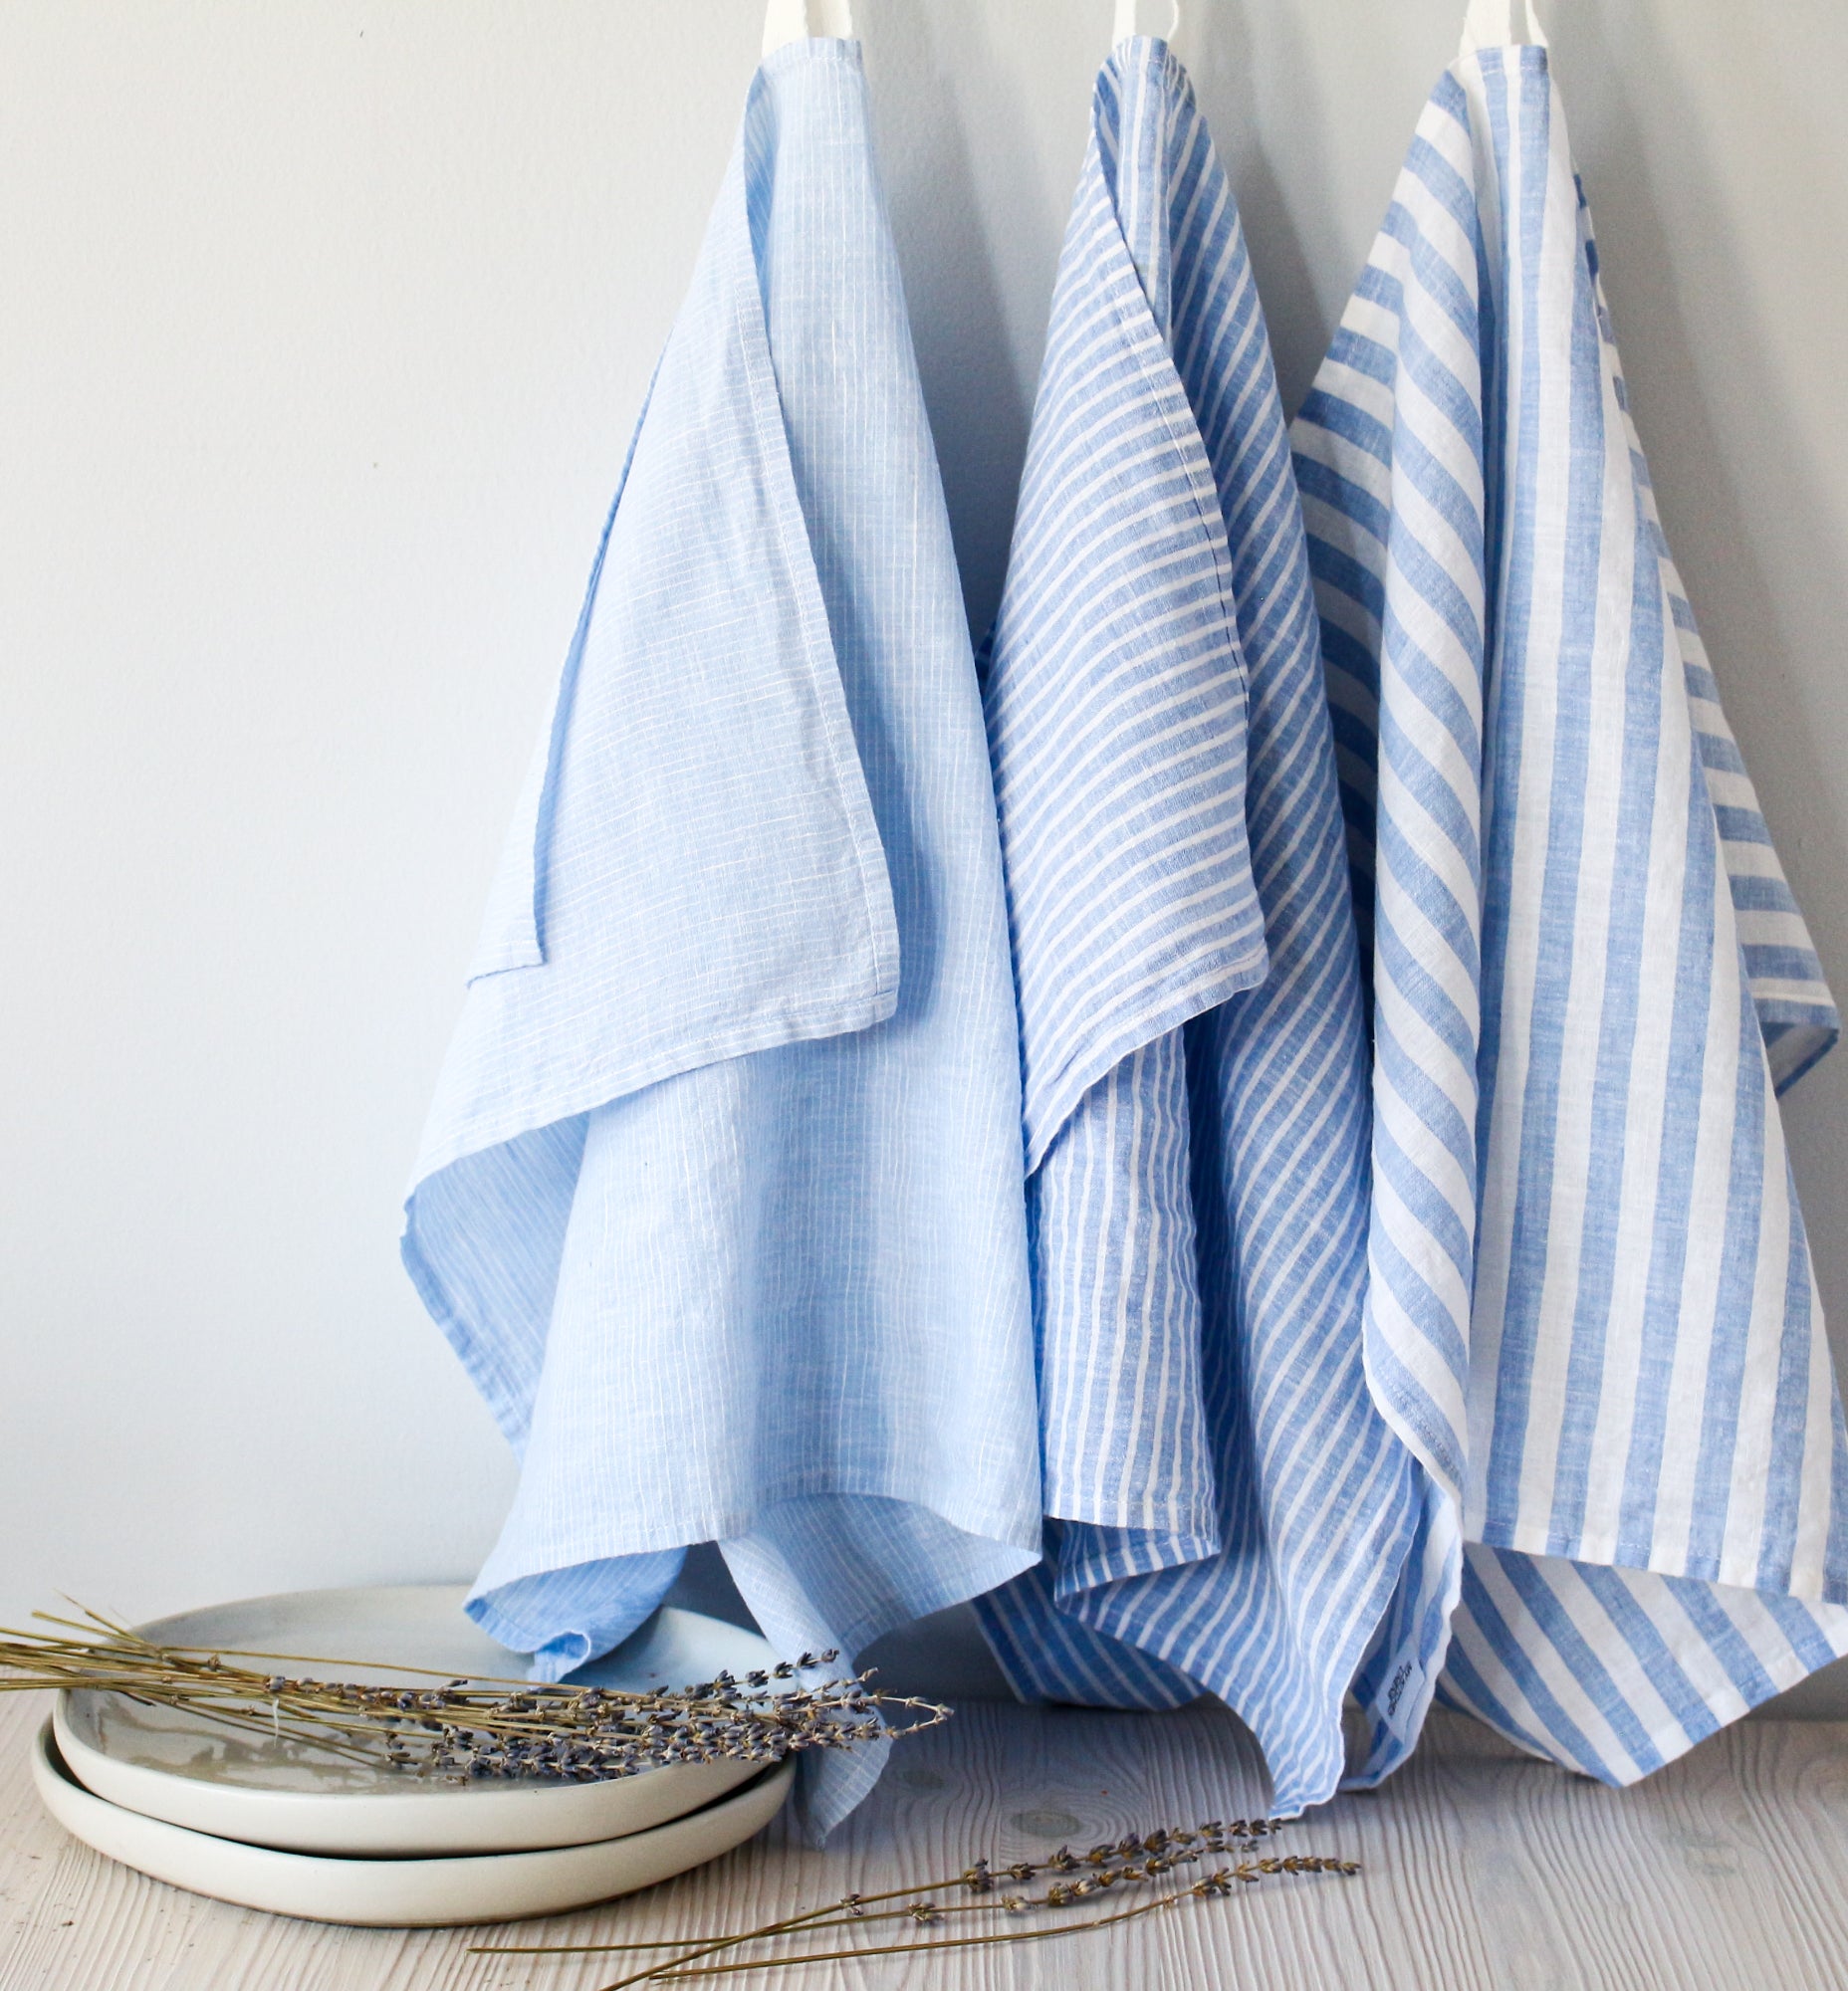 Linen Cotton Tea Towels. Set of 2 Linen Kitchen Towels White, Blue